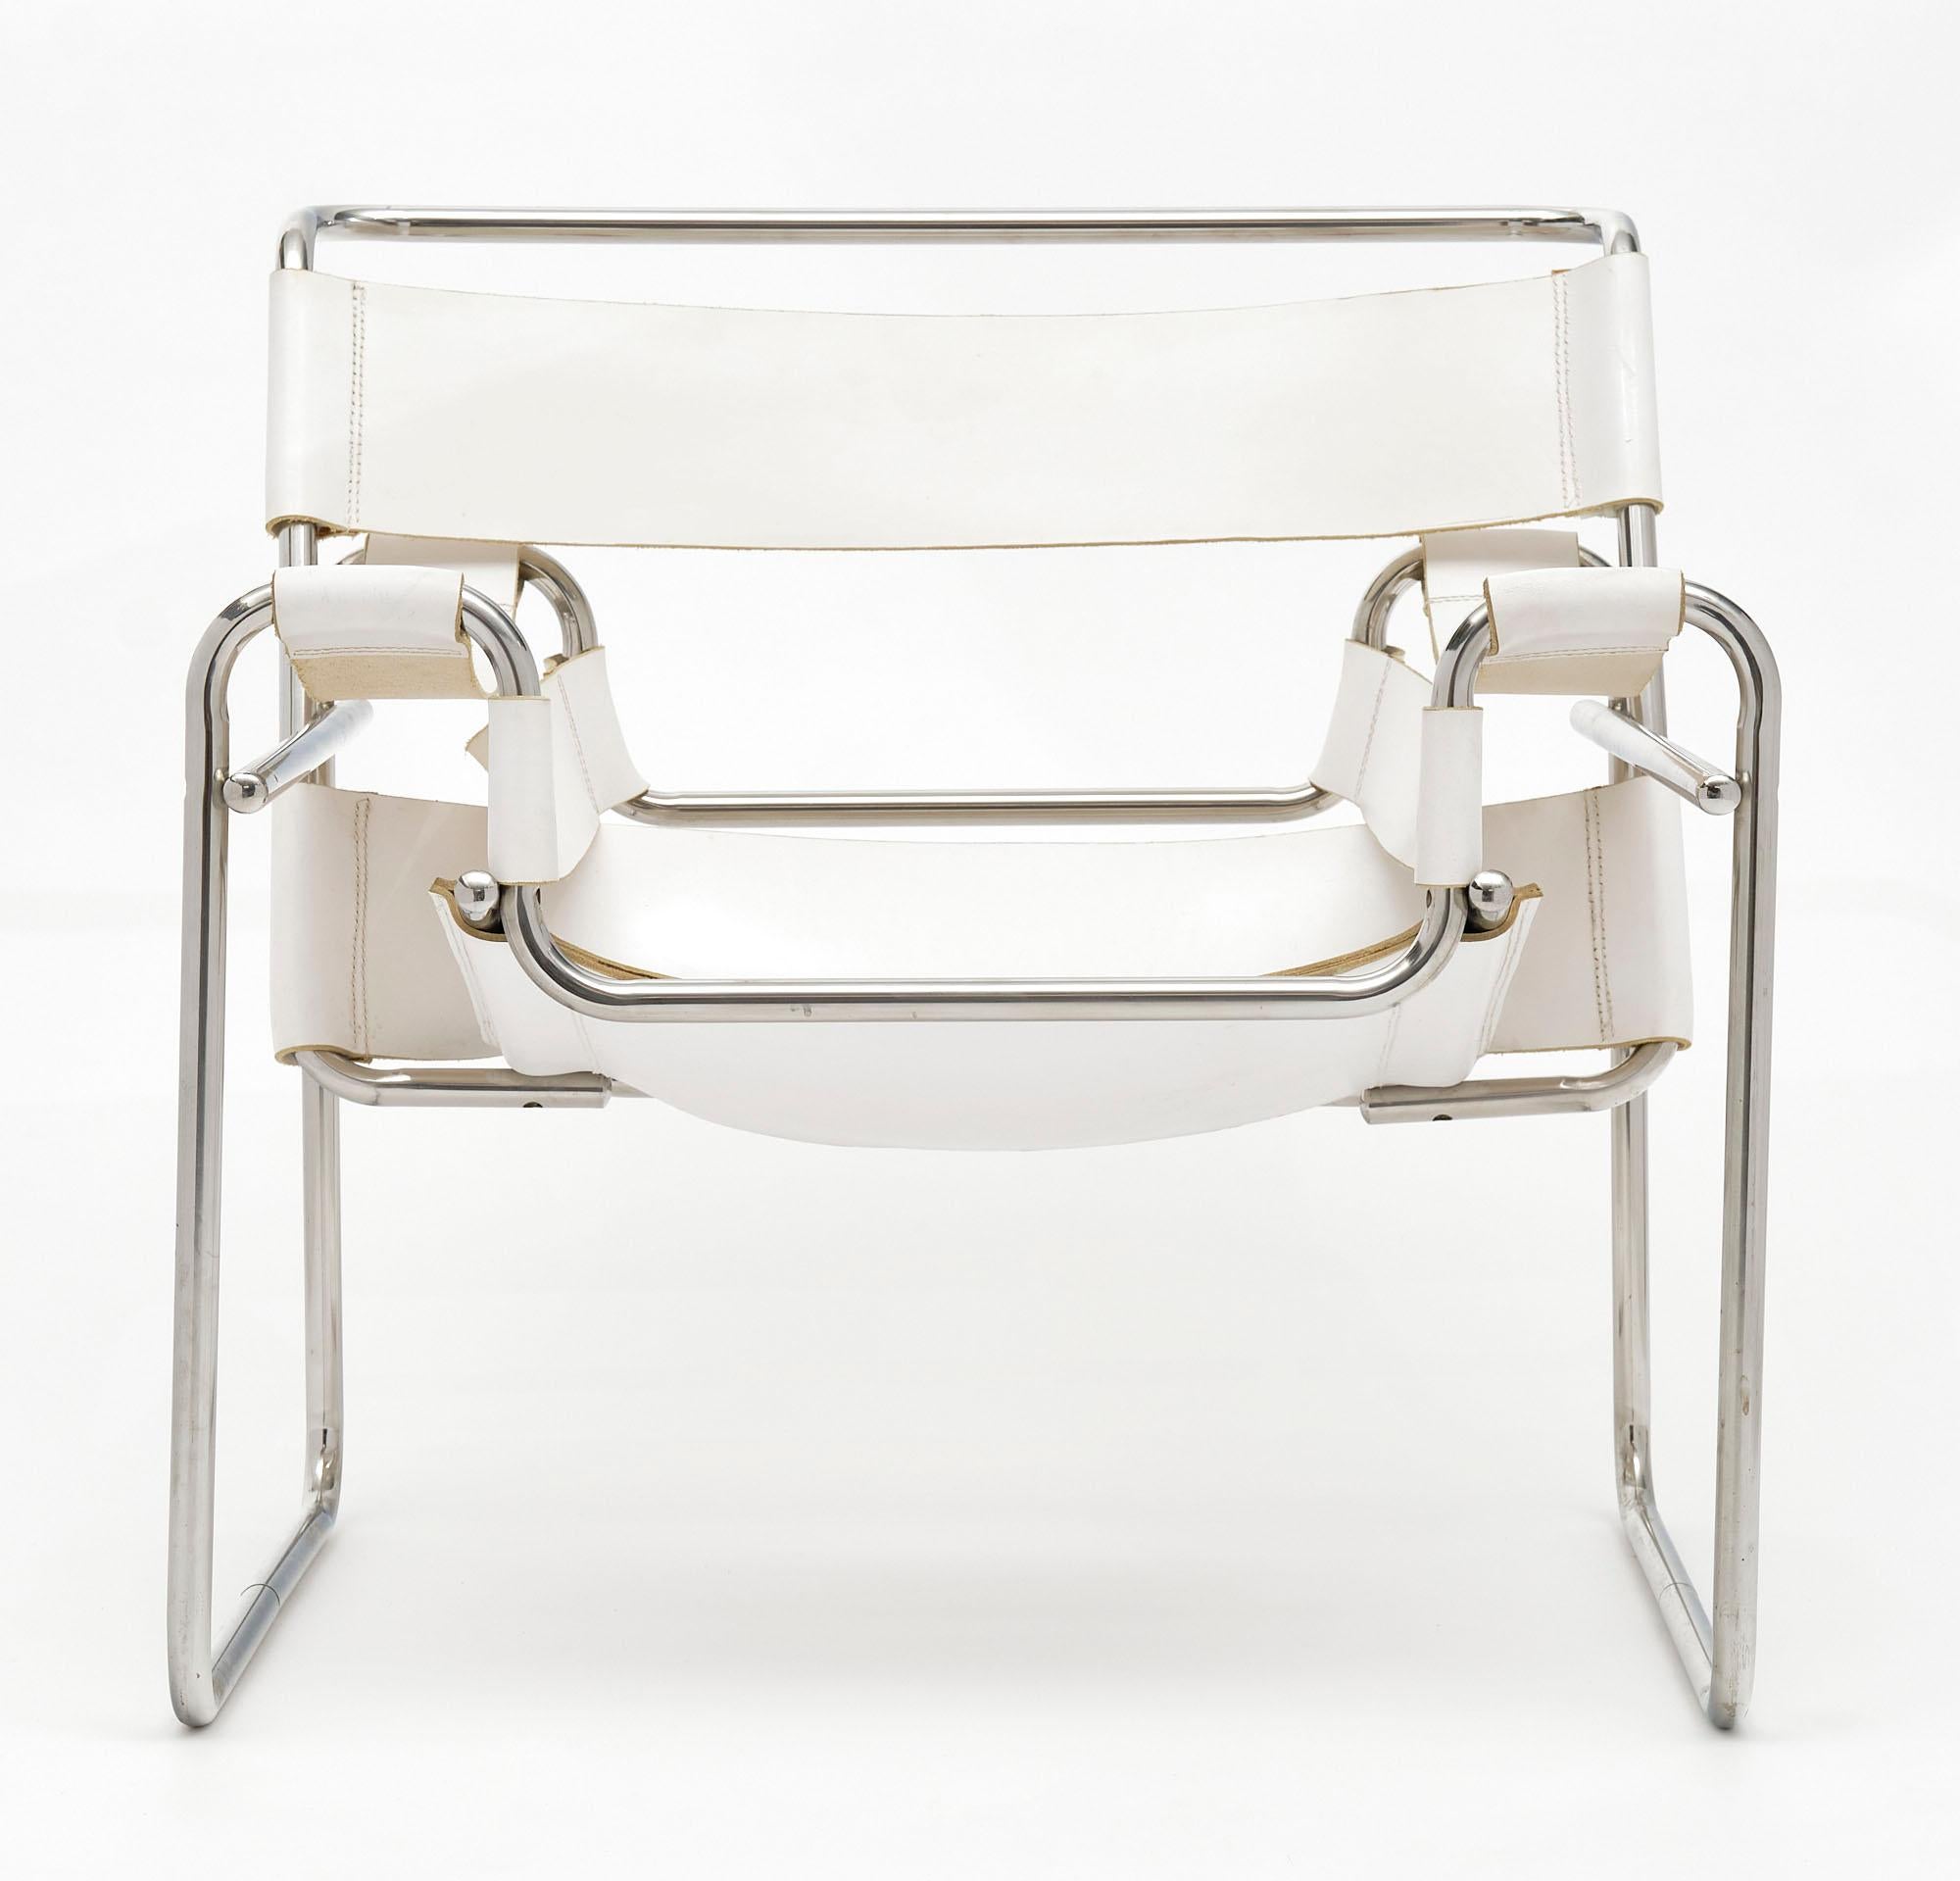 Fauteuil à la manière du célèbre design Wassily de Marcel Breuers. Cette chaise est fabriquée en cuir blanc et en acier chromé dans le design emblématique de la chaise.